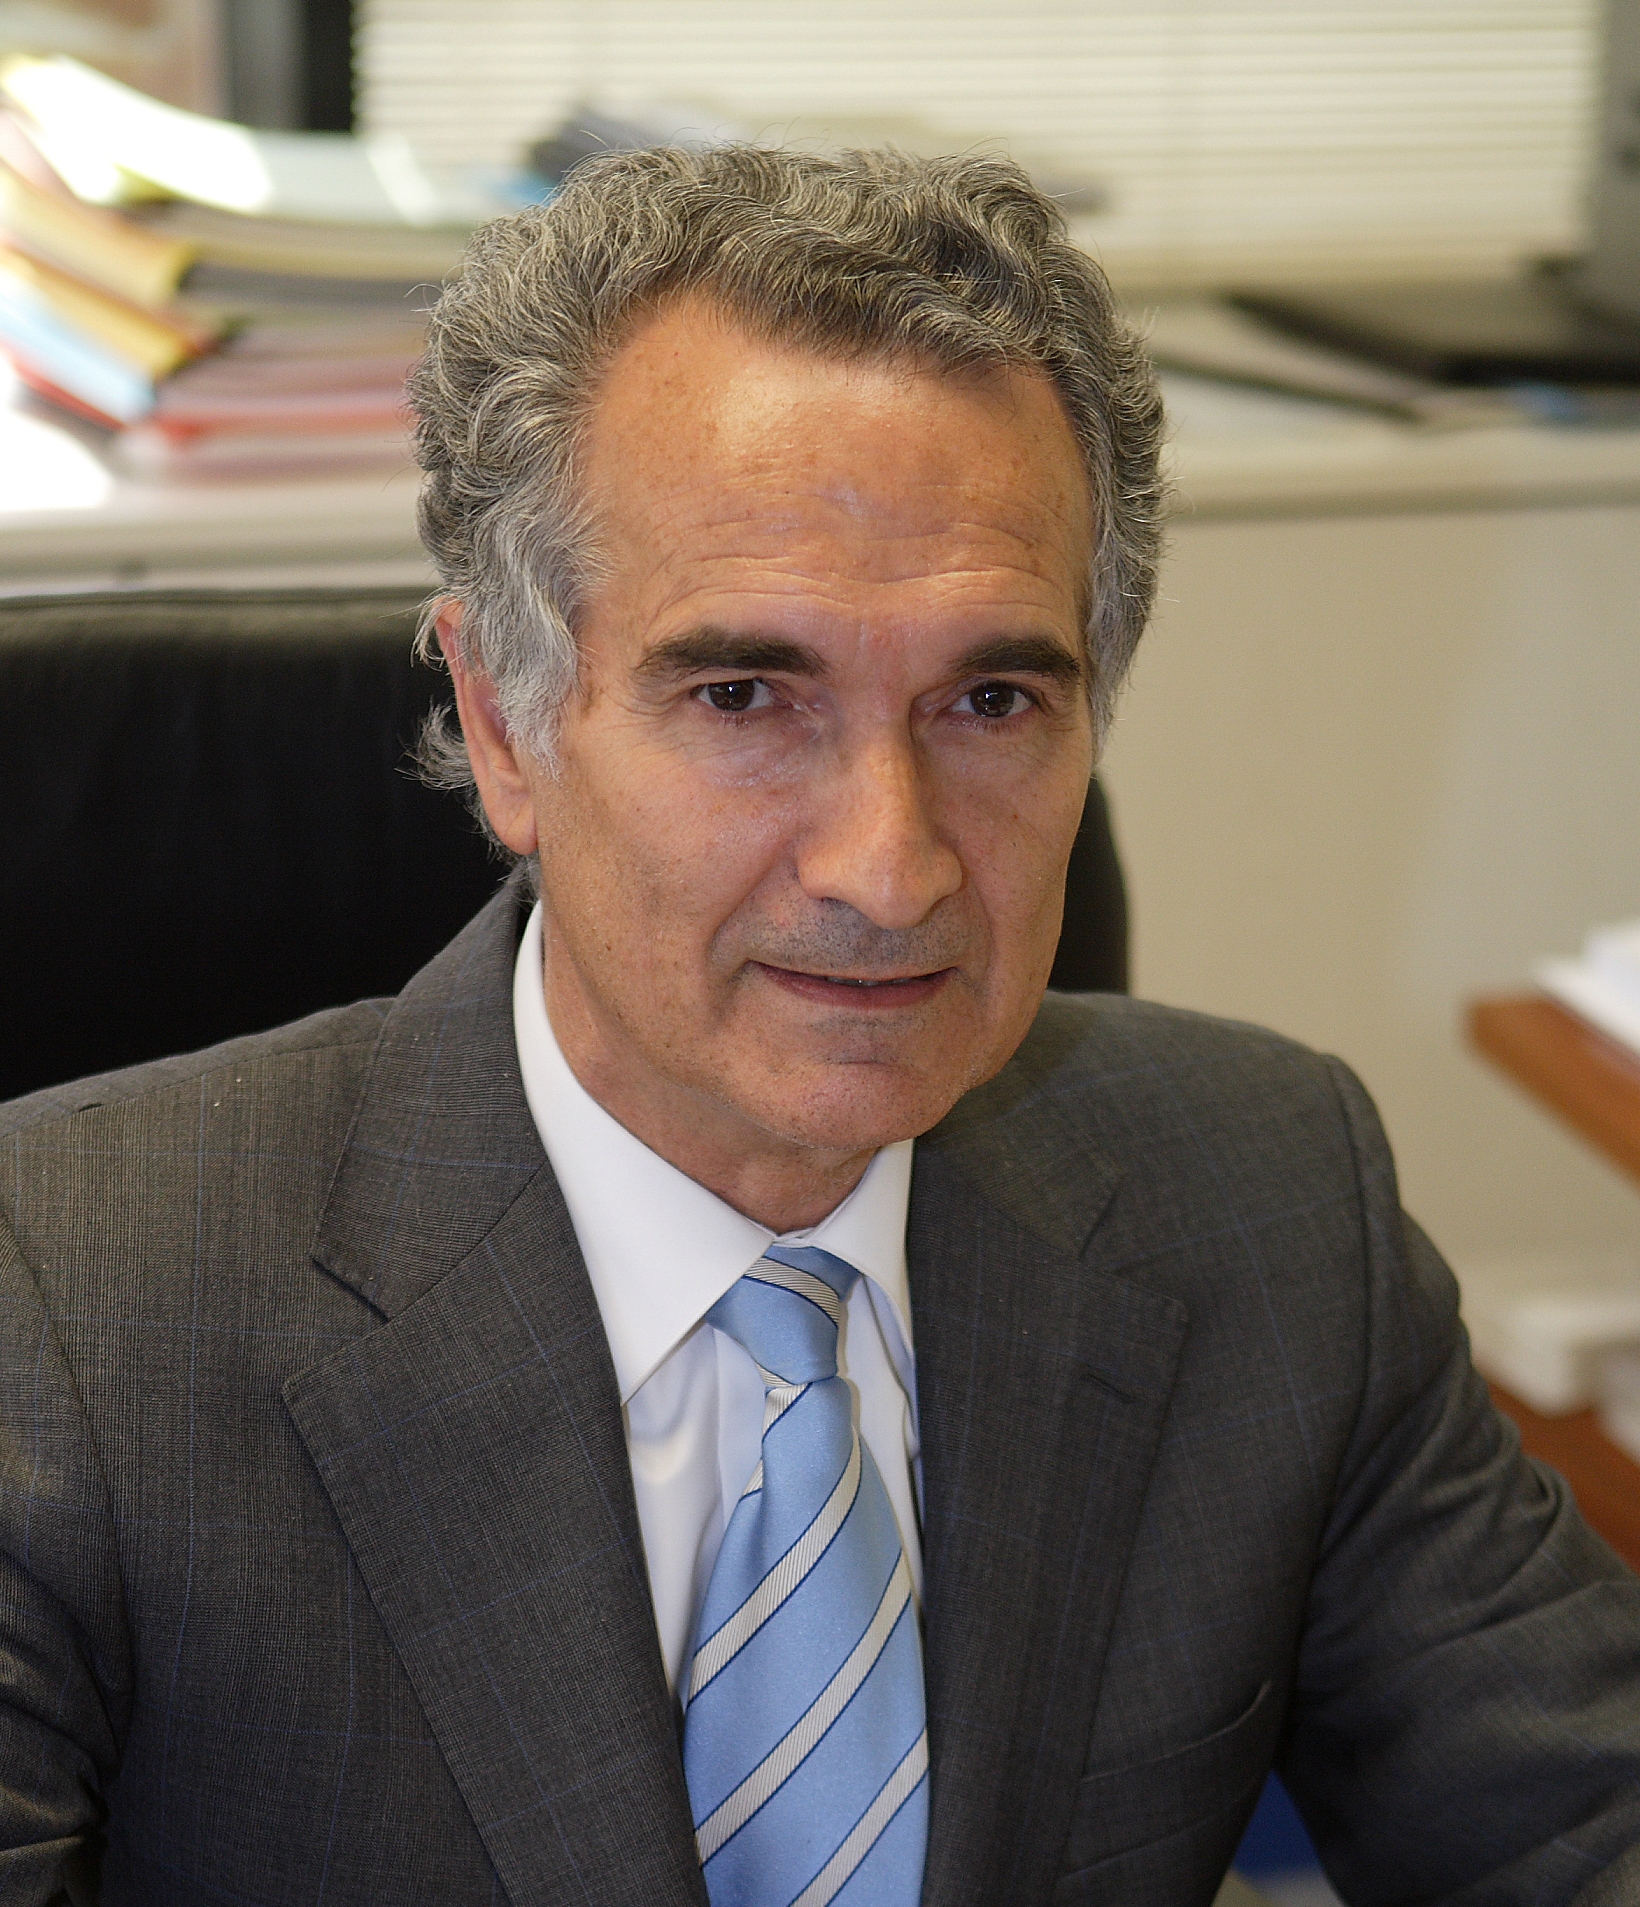 Fernando Moreno, General Manager of Aqualia